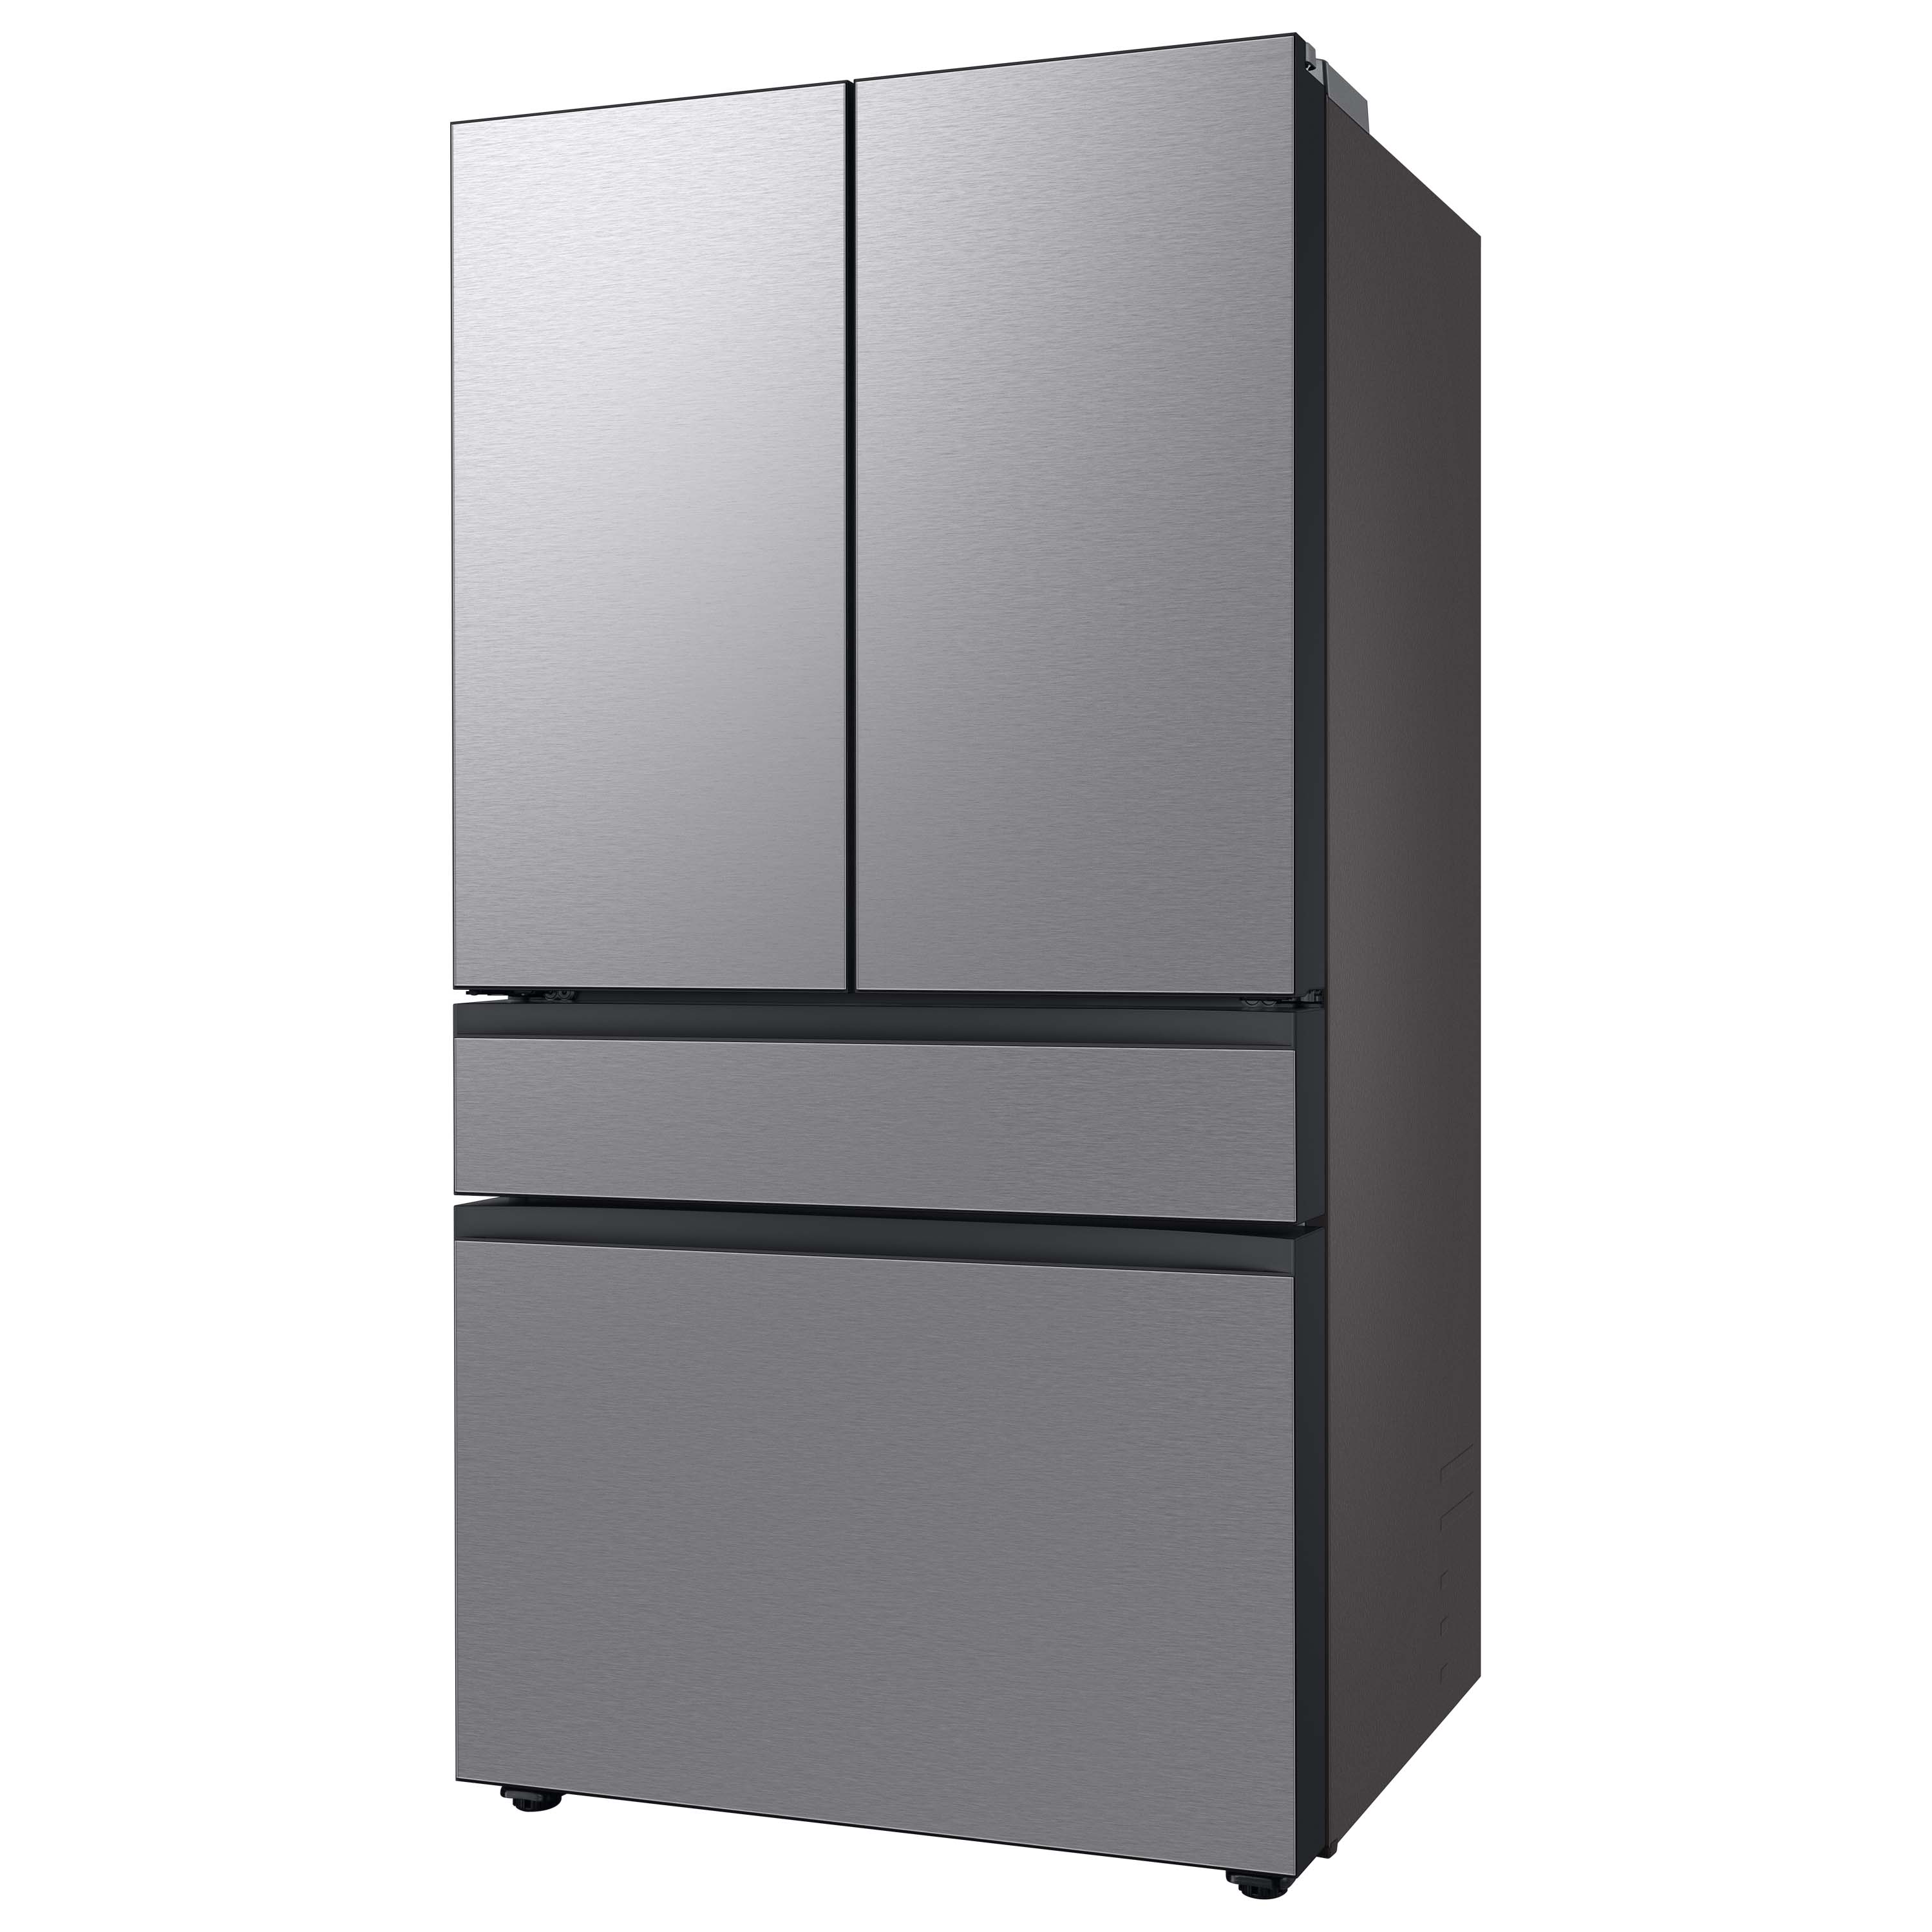 Samsung Bespoke 28.9-cu ft 4-Door Smart French Door Refrigerator